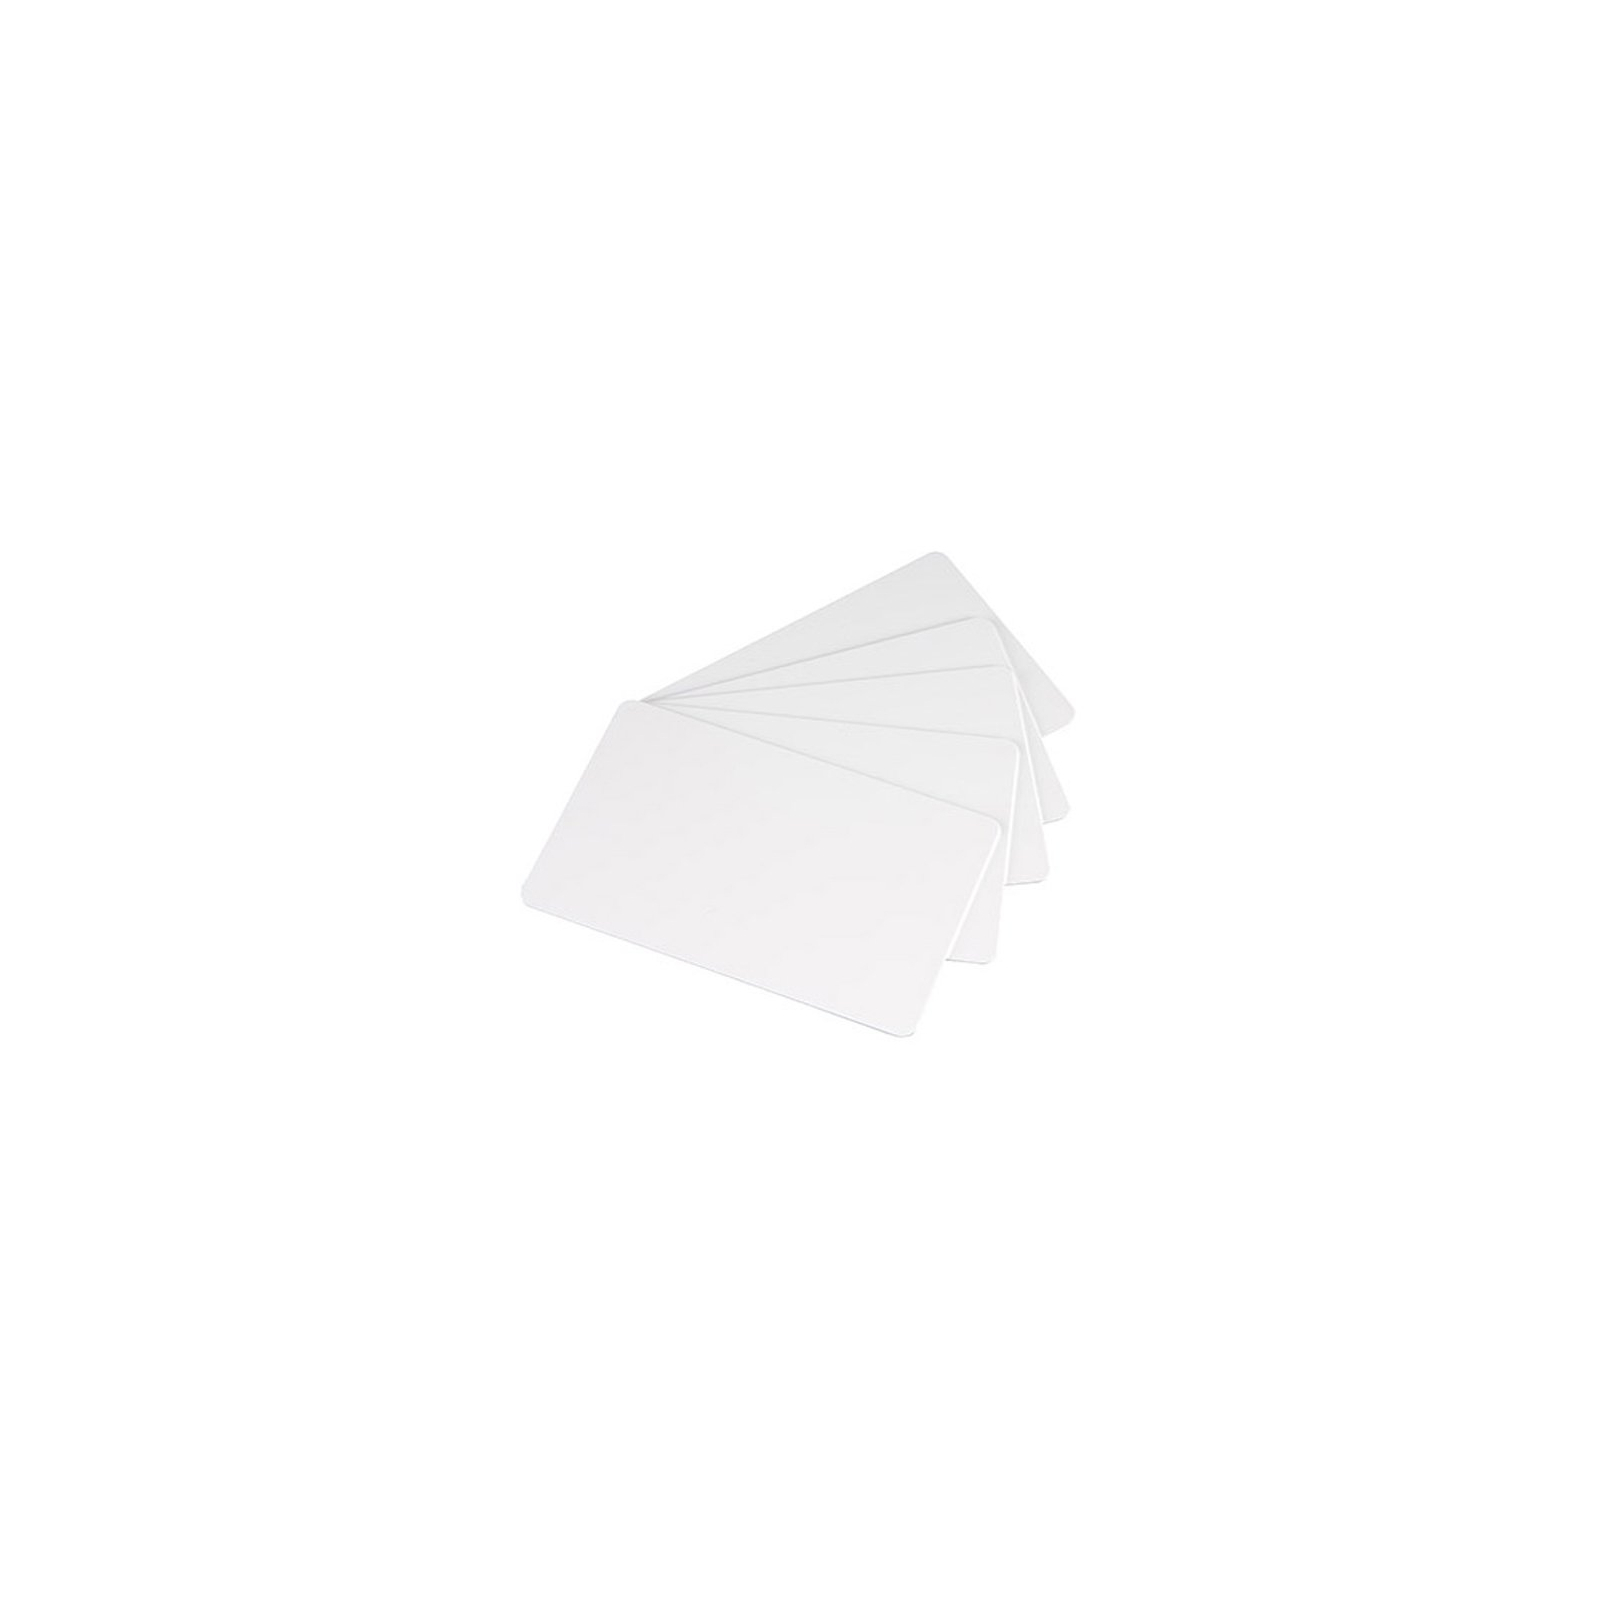 Картка пластикова чиста Evolis C4001 100 шт (C4001-100)